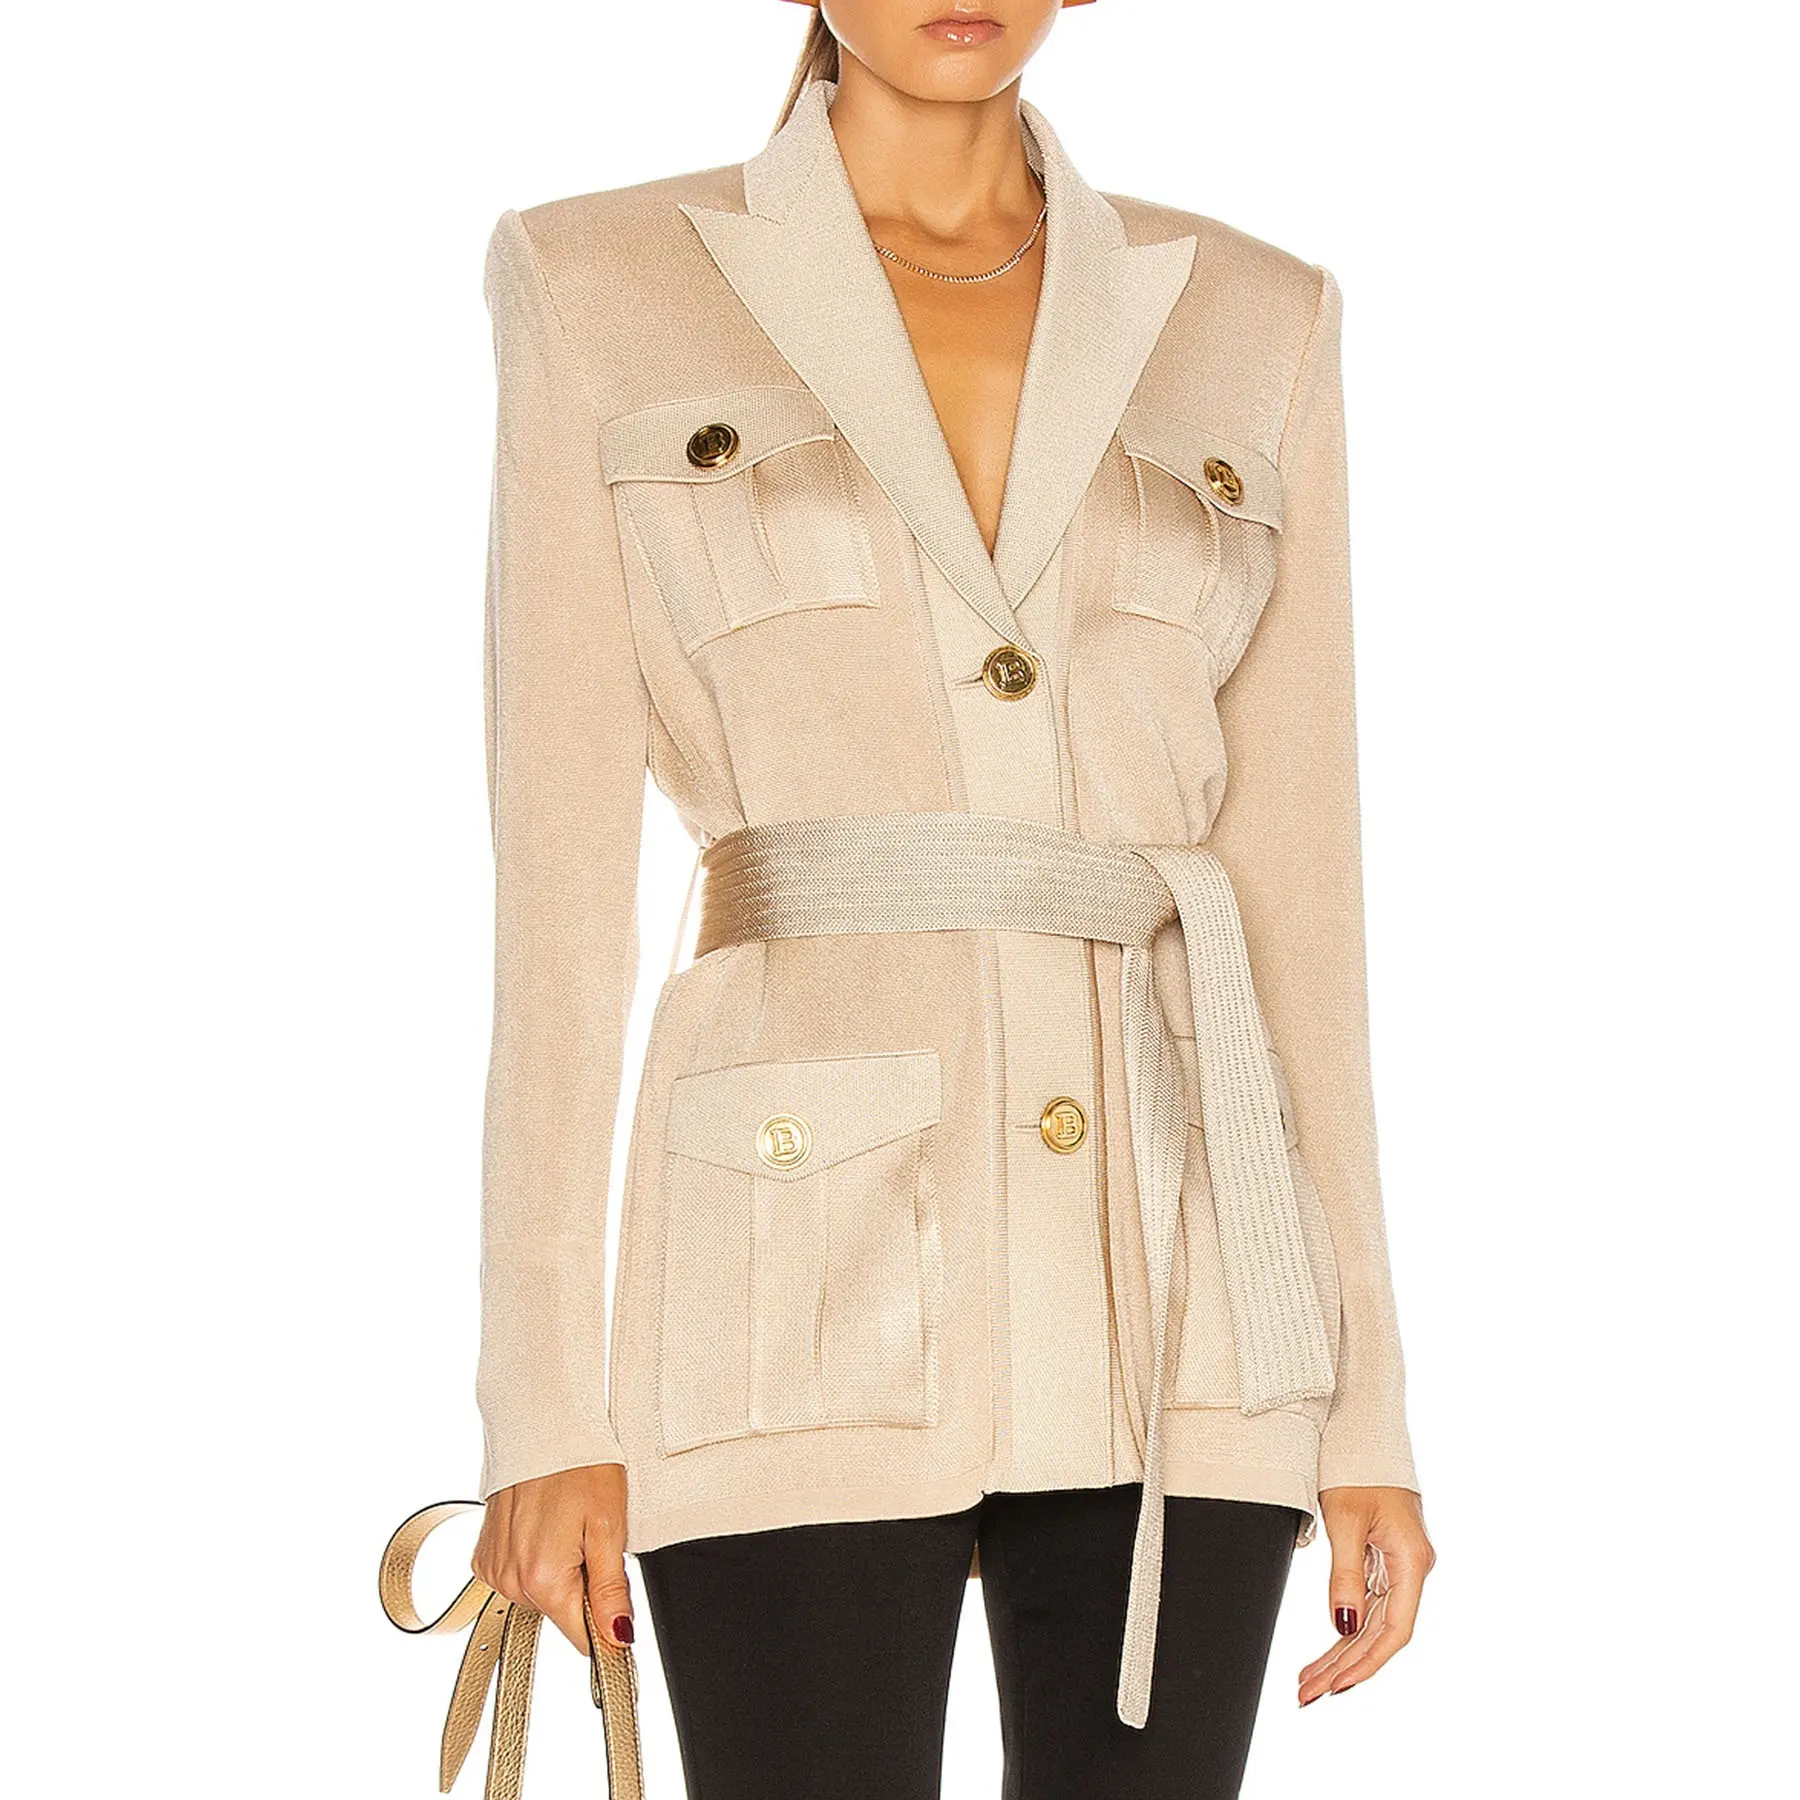 Eurpean Стиль отложной воротник модное пальто для женщин 2021 элегантная верхняя одежда Уличная Женская Офисная Дамская куртка с поясом